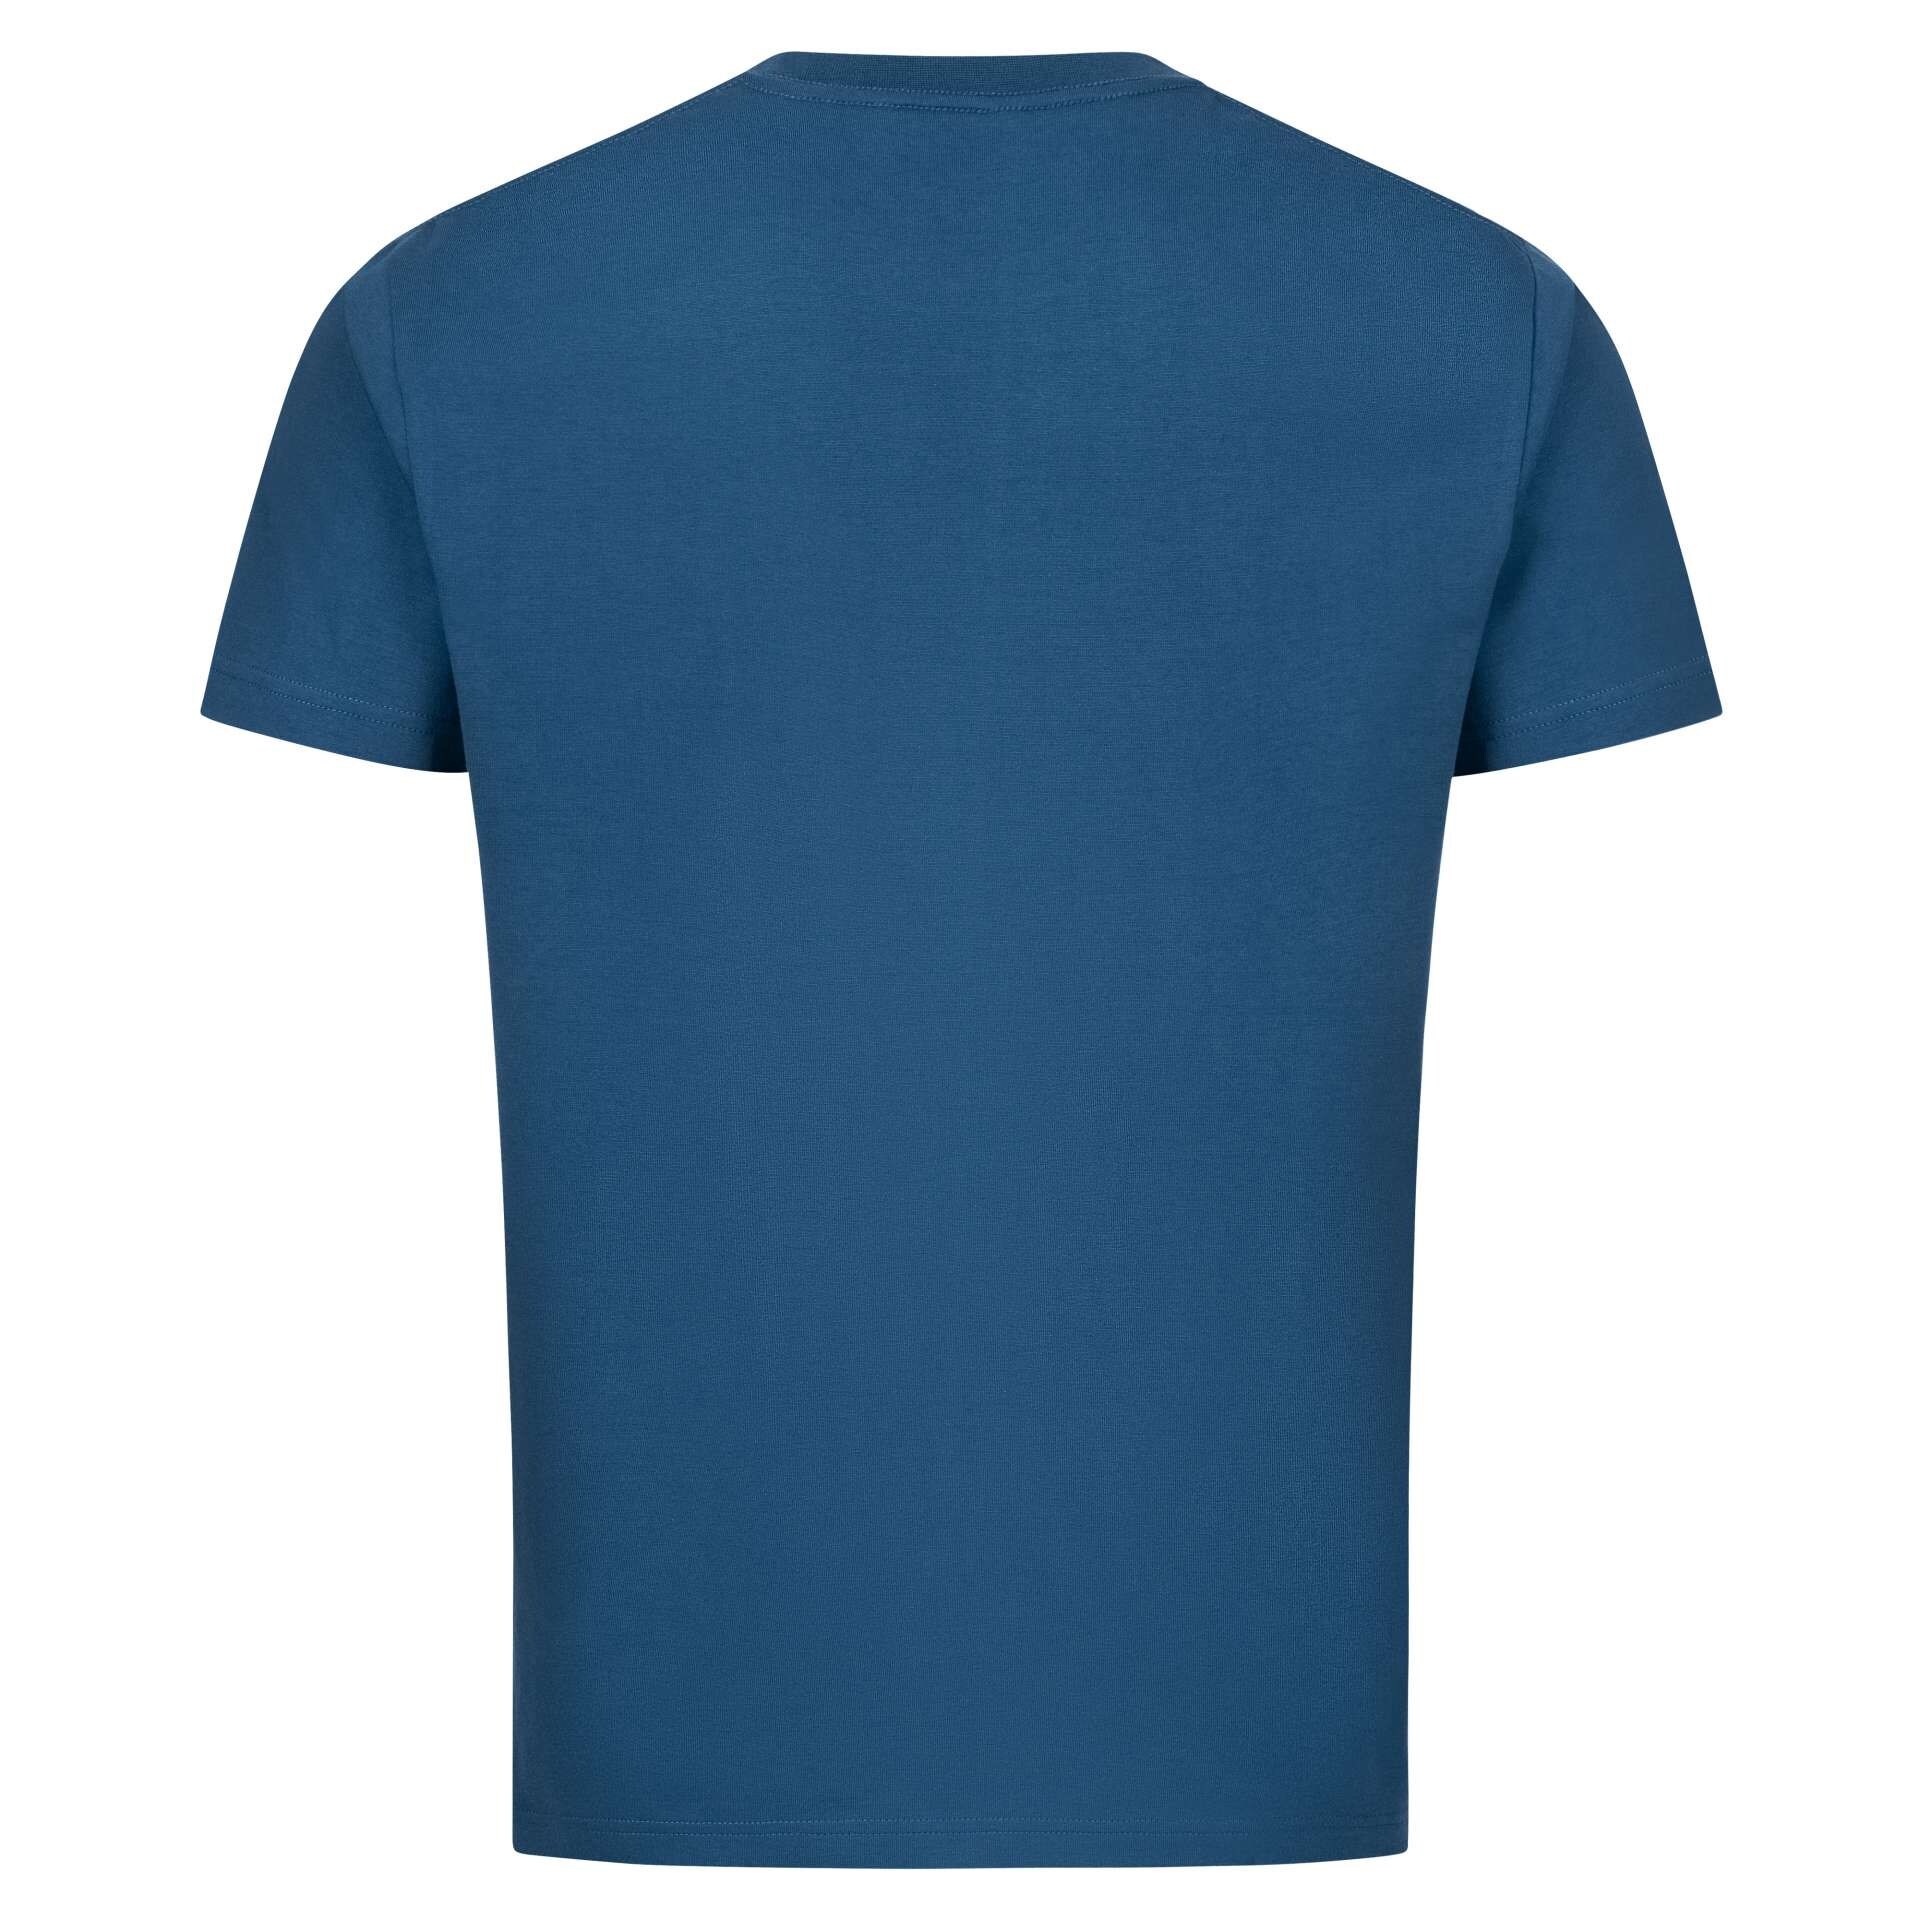 Blaser Men's Argali T-Shirt Navy